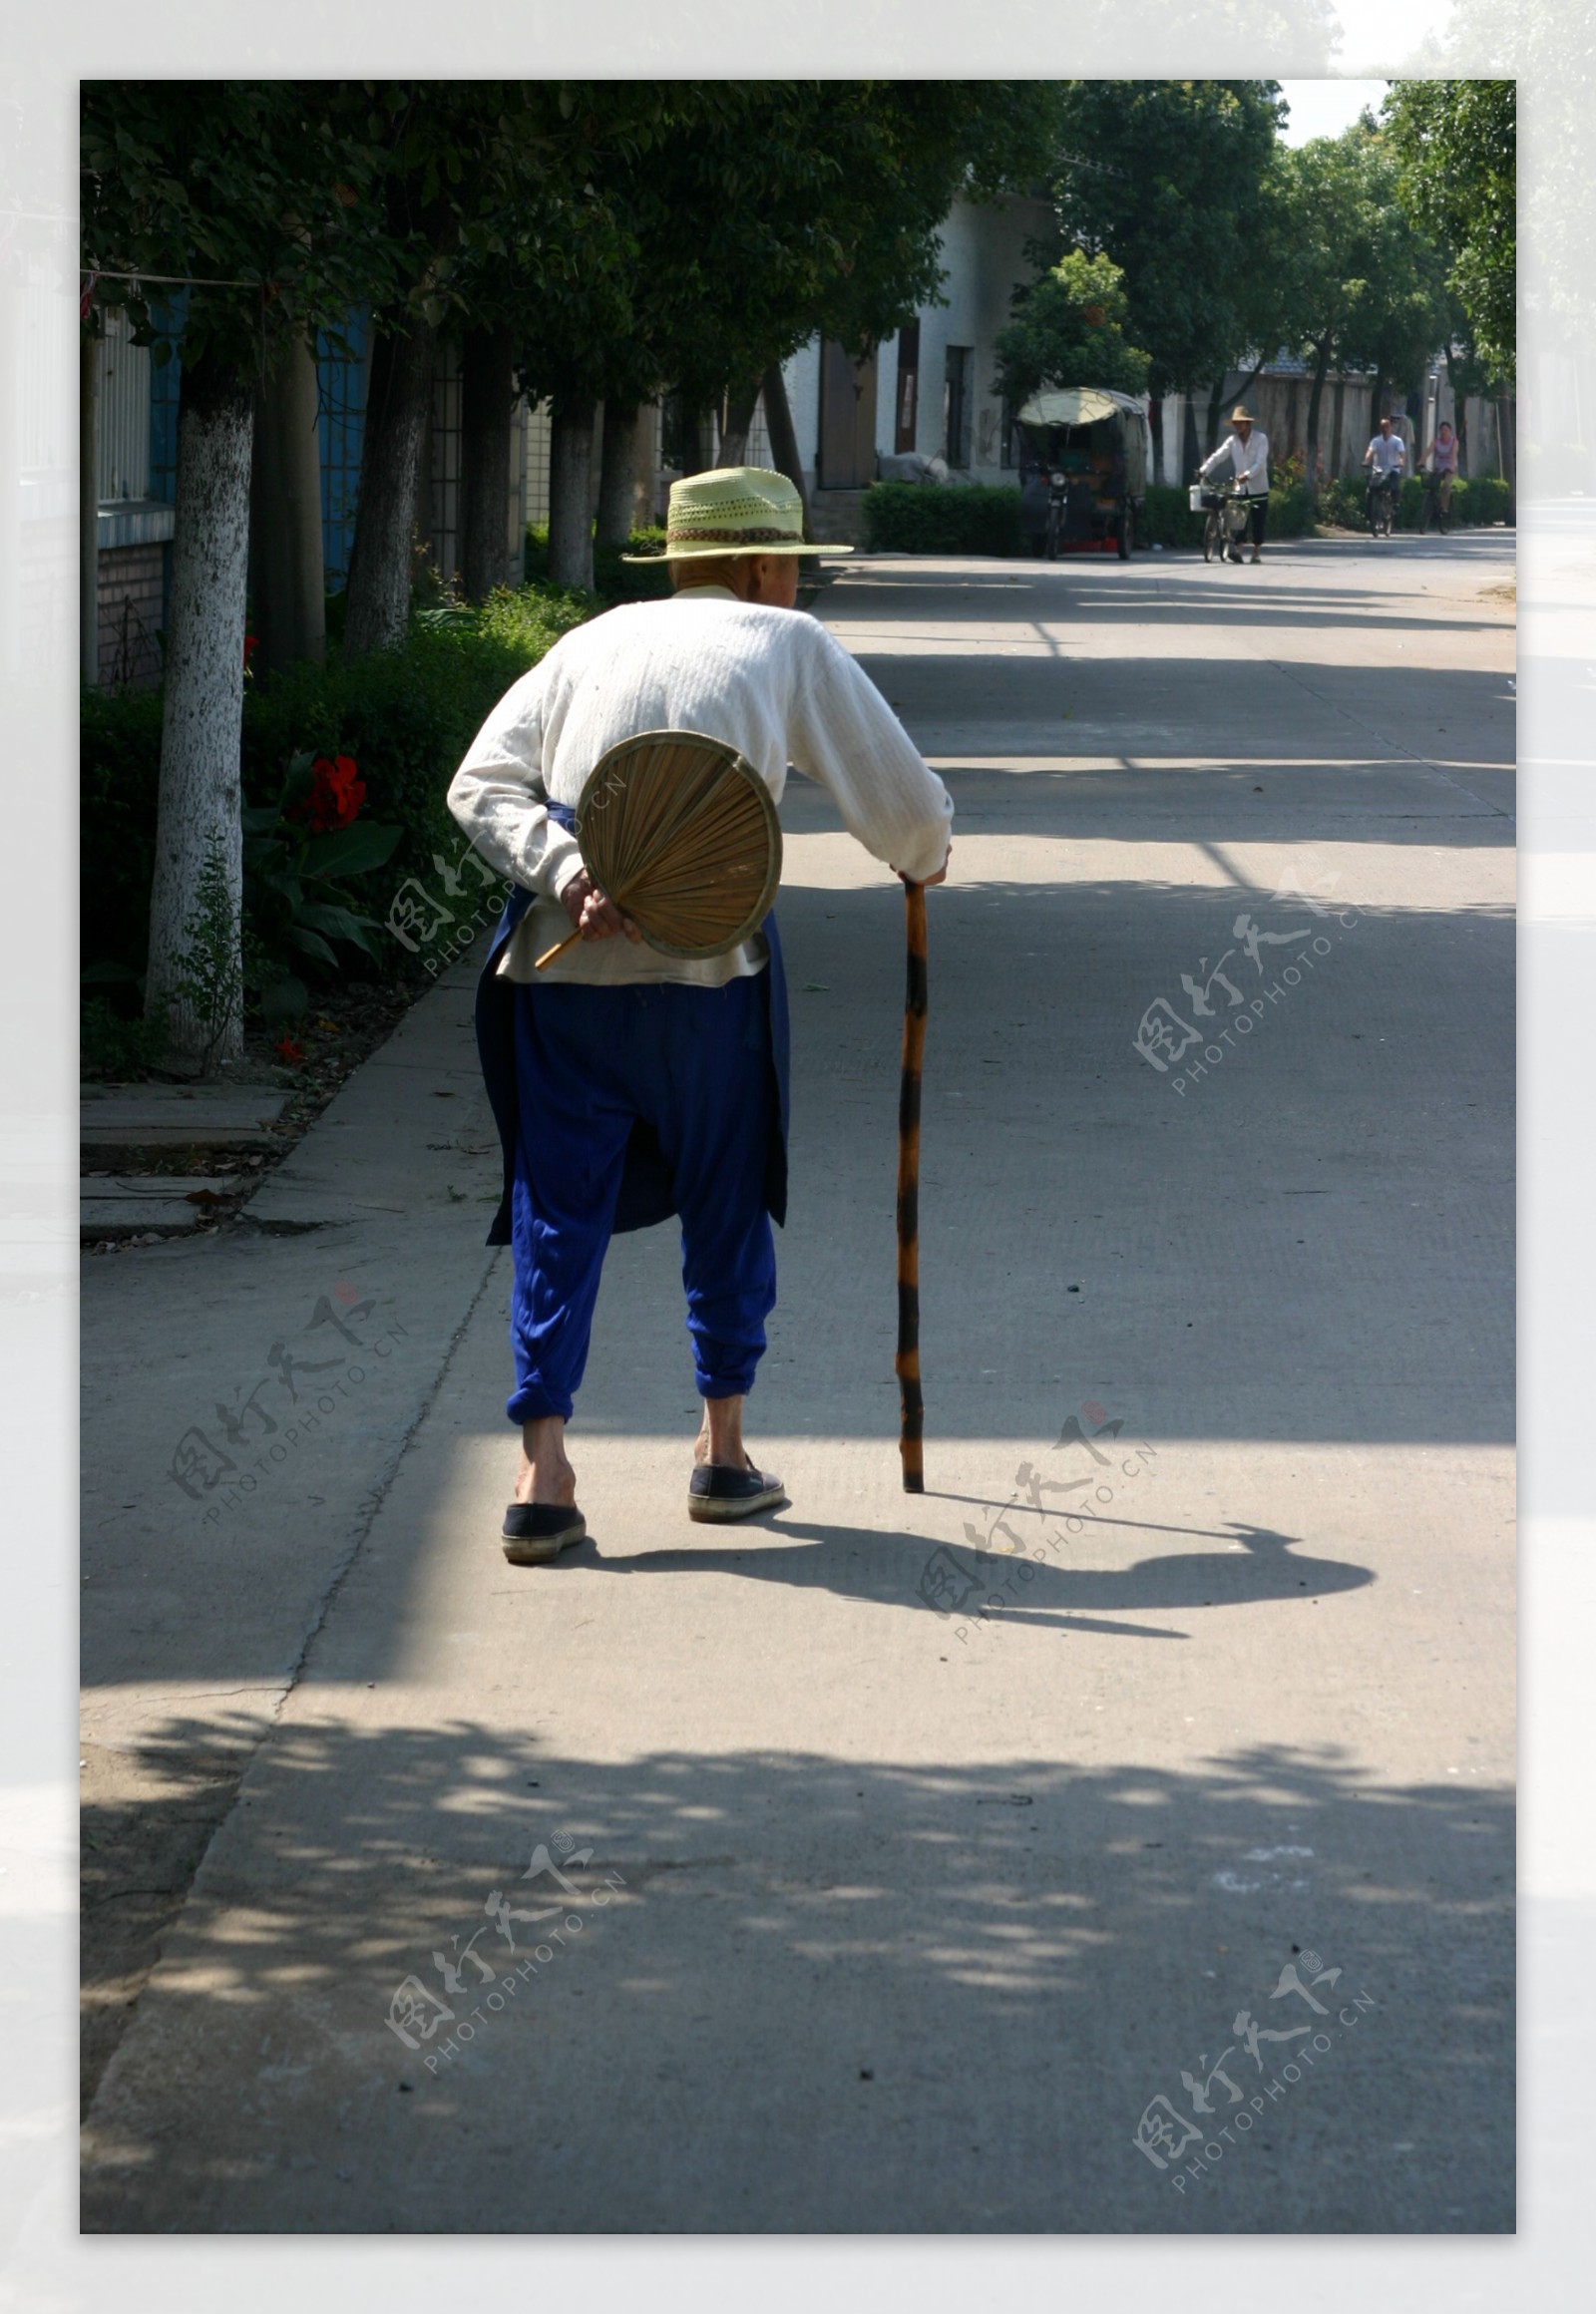 拄拐杖的老人图片